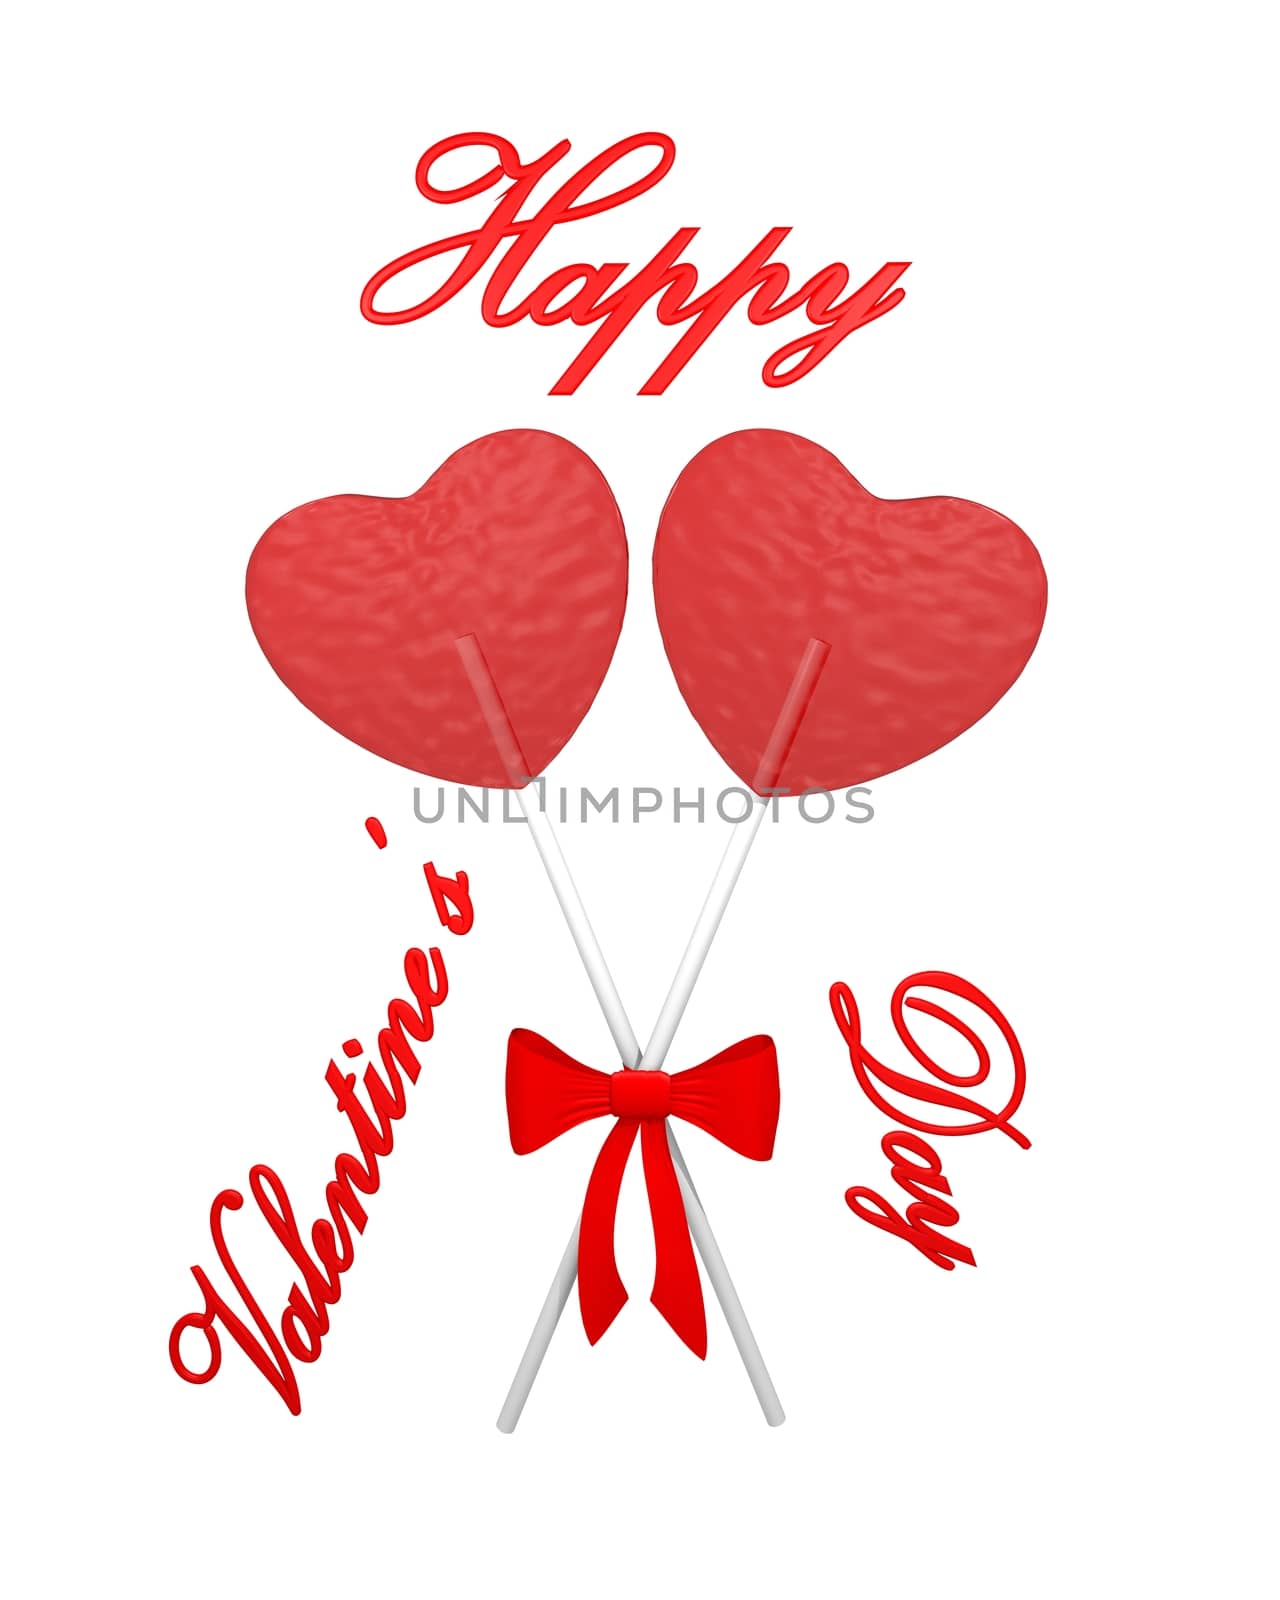 Two red heart lollipops by midani